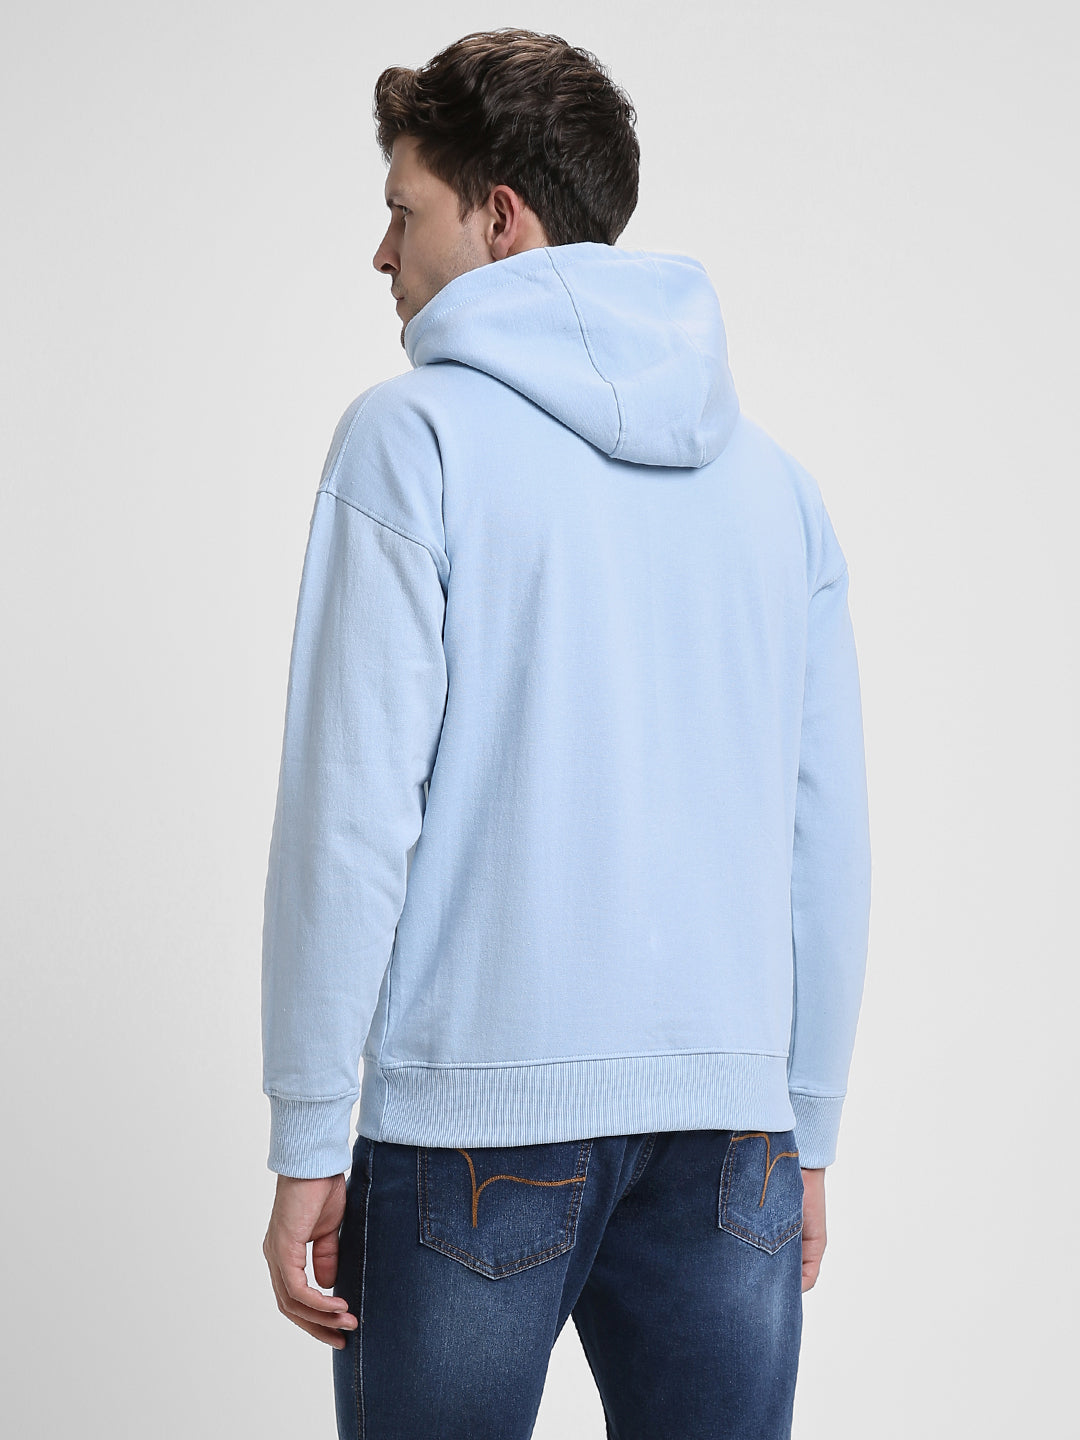 Dennis Lingo Men's Light Blue  Full Sleeves Hoodie Sweatshirt